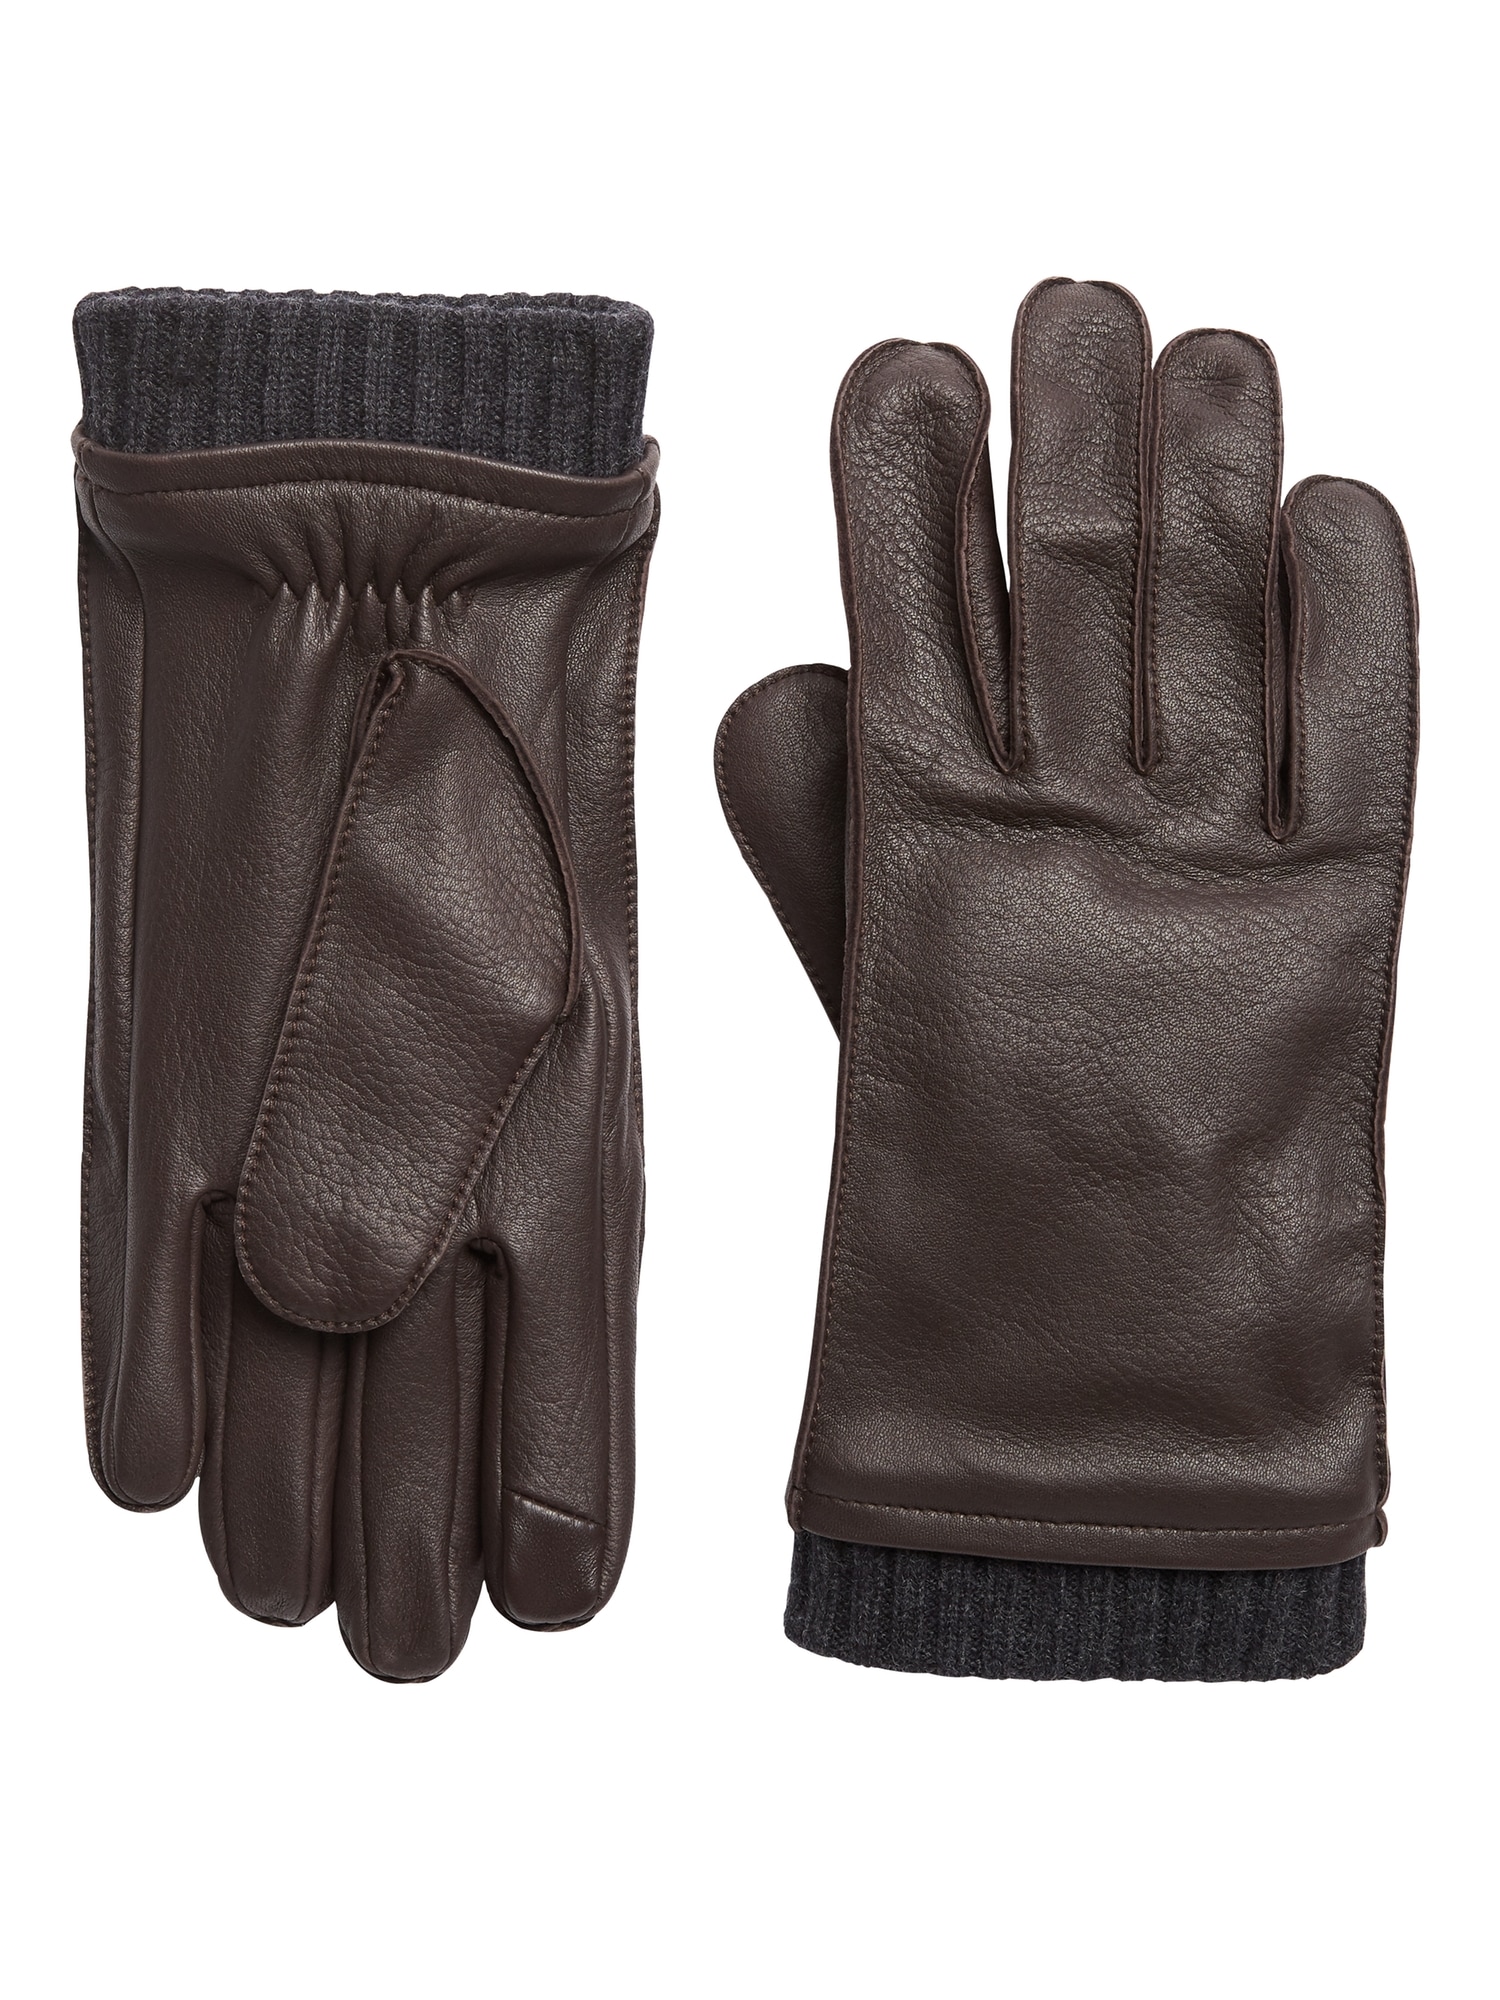 Leather Knit-Cuff Glove